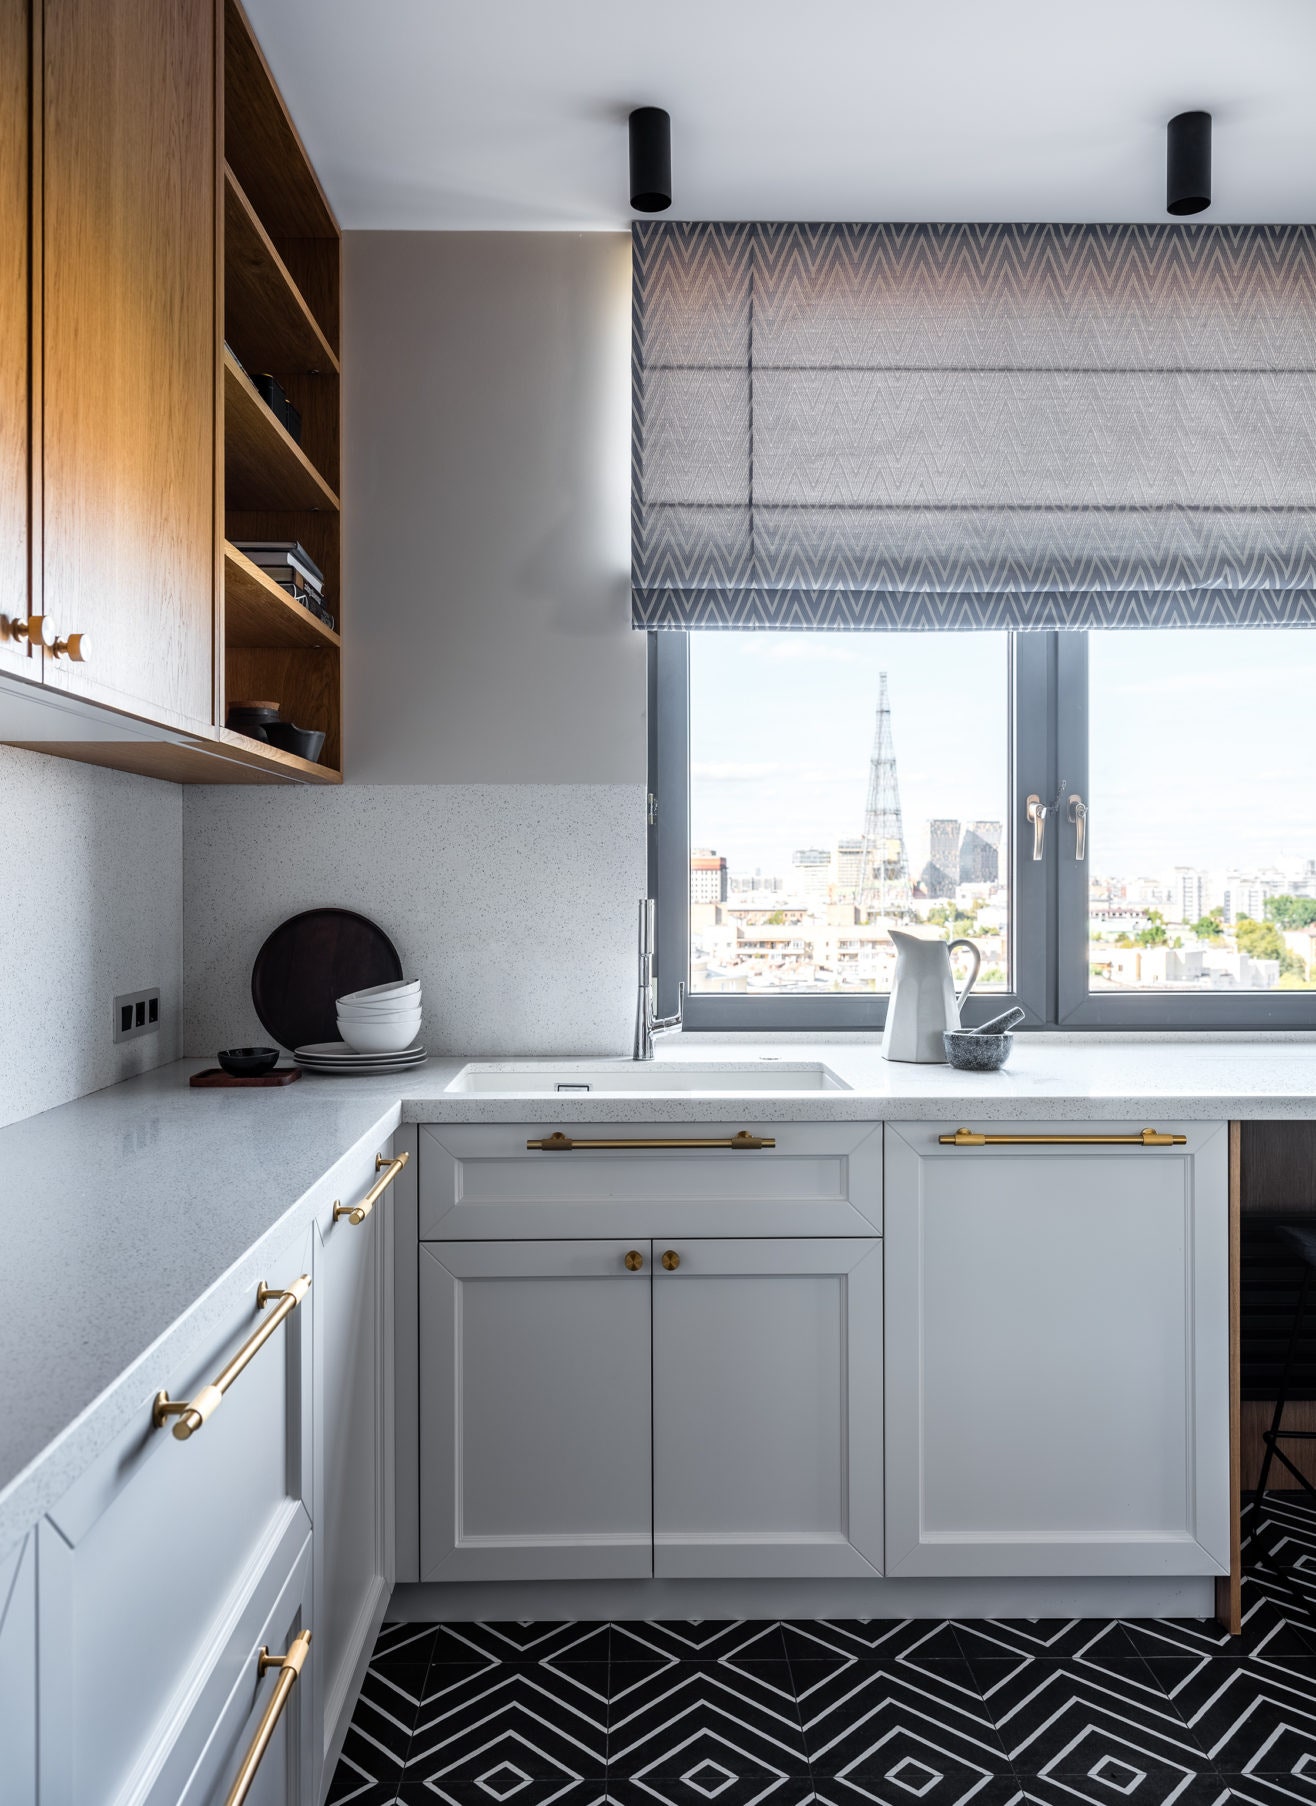 Кухня с окном в частном доме: дизайн и лучшие планировки с фото-идеями